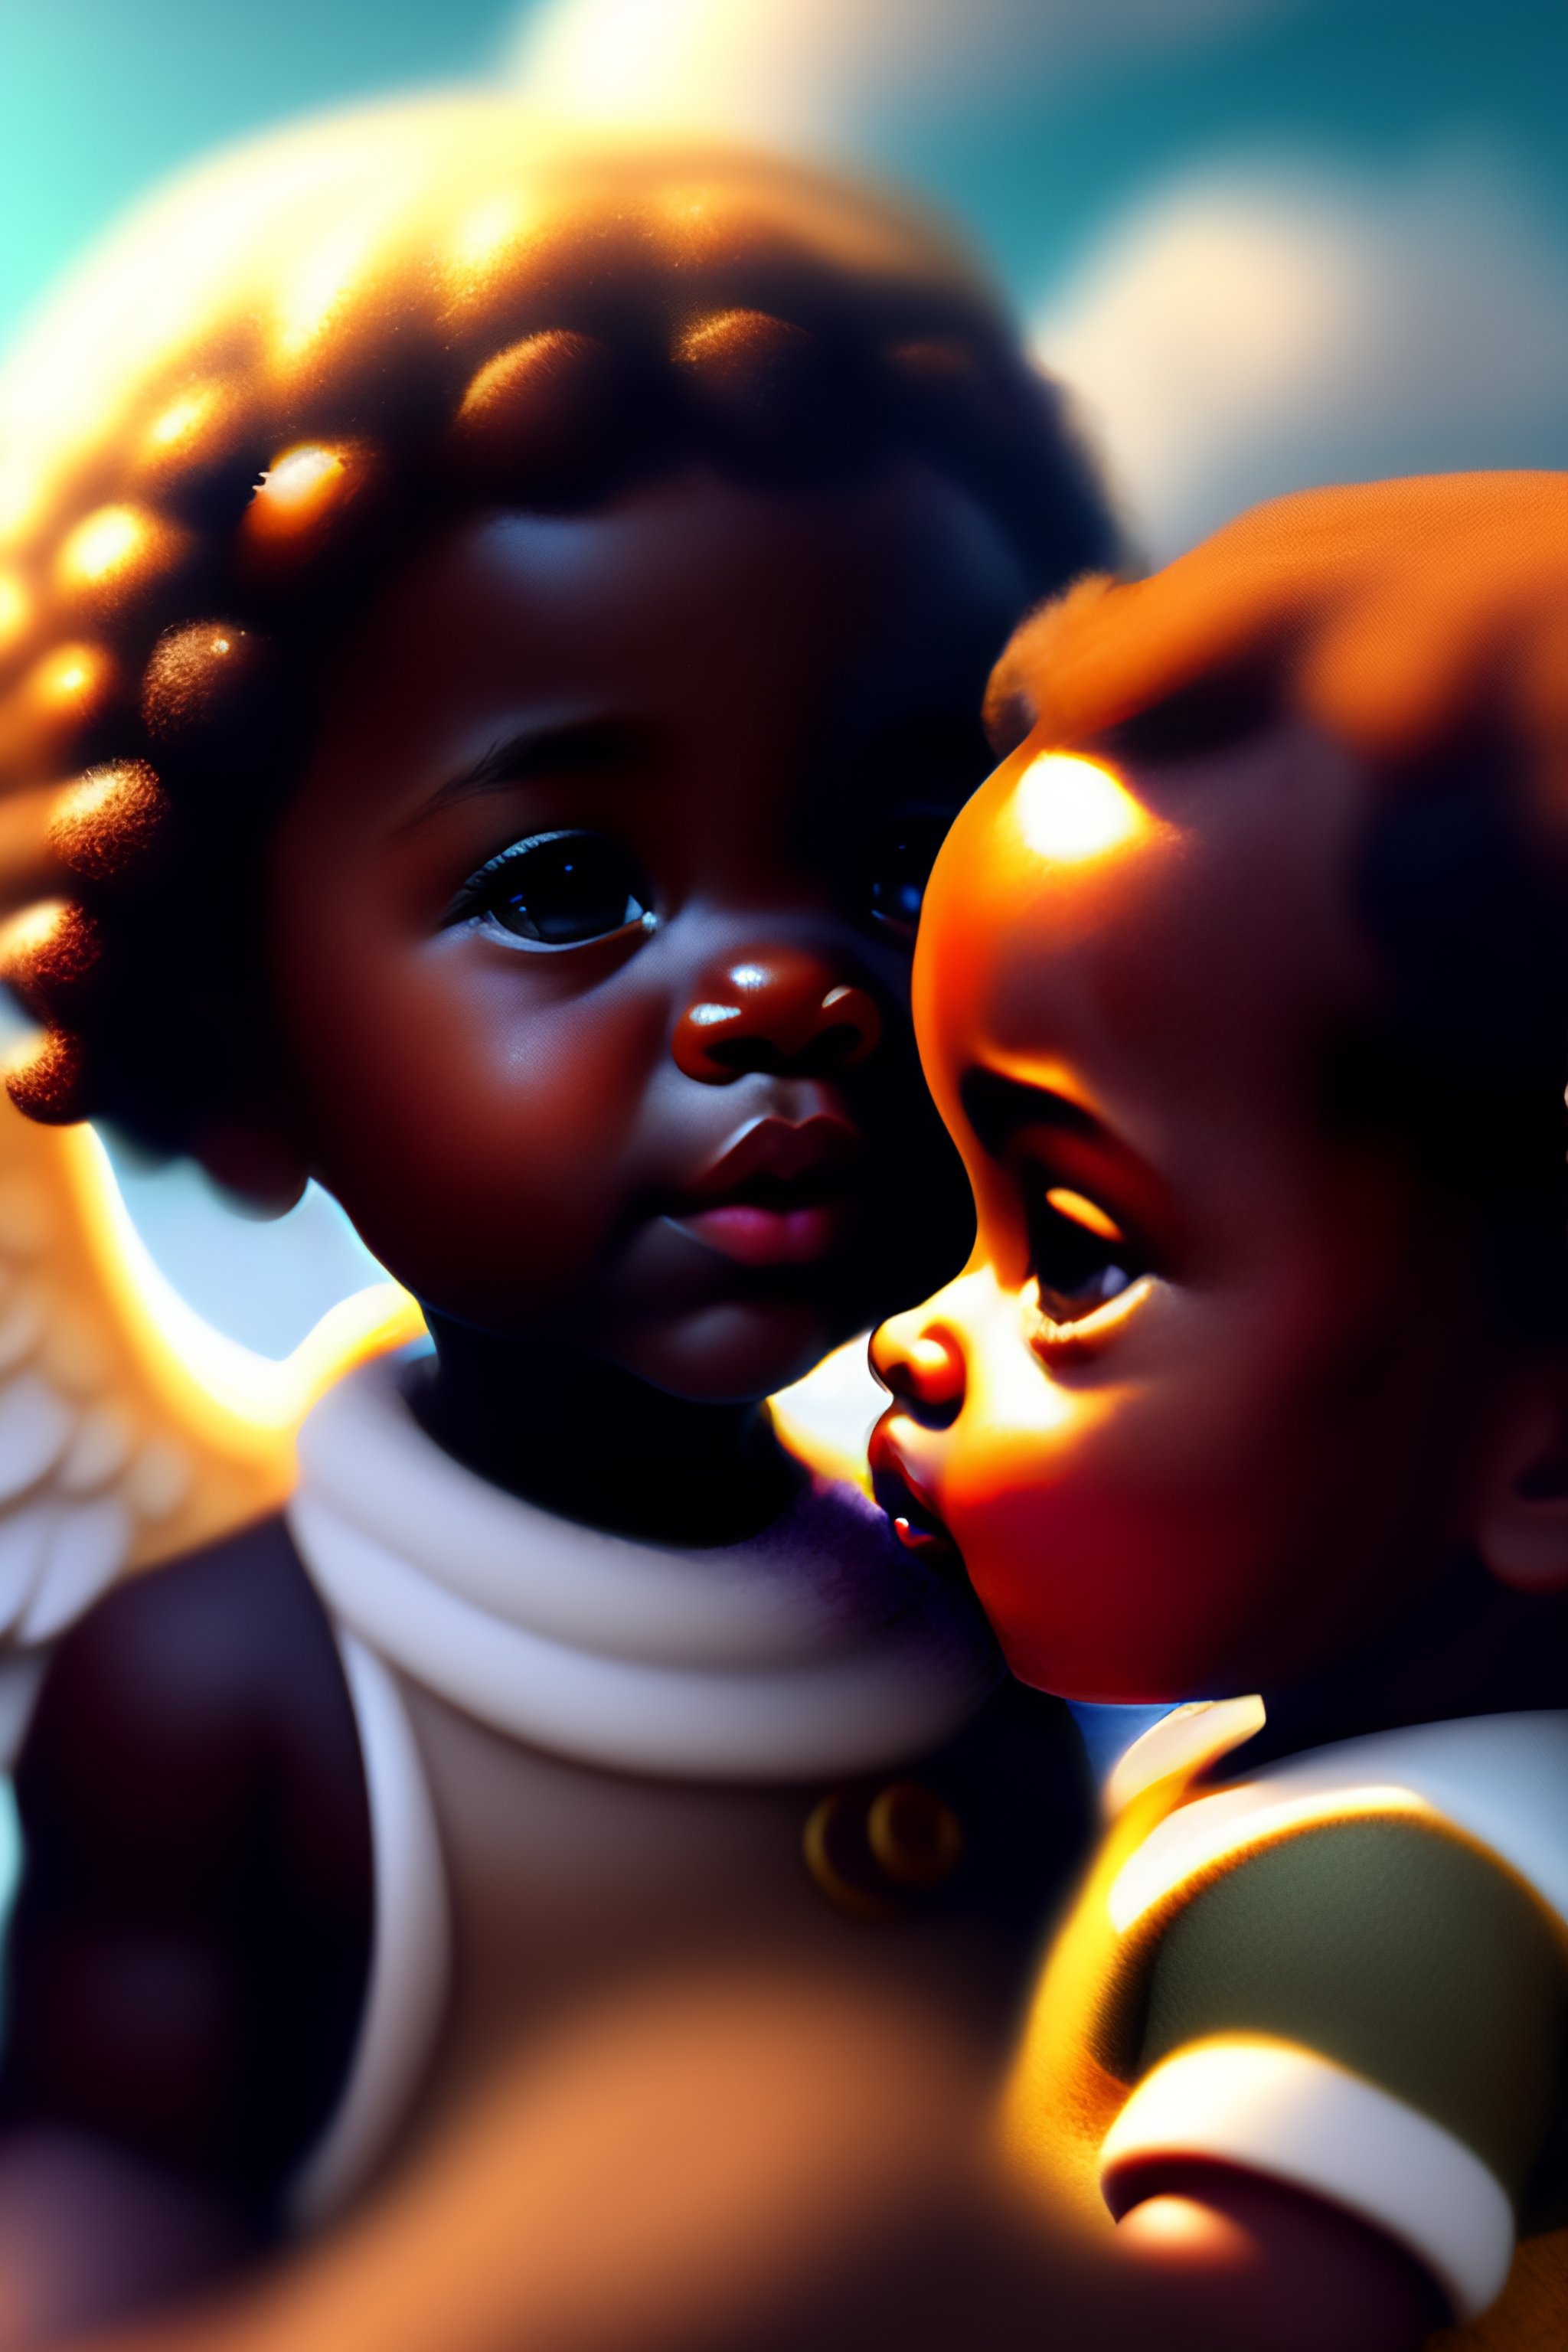 beautiful black baby angel paintings